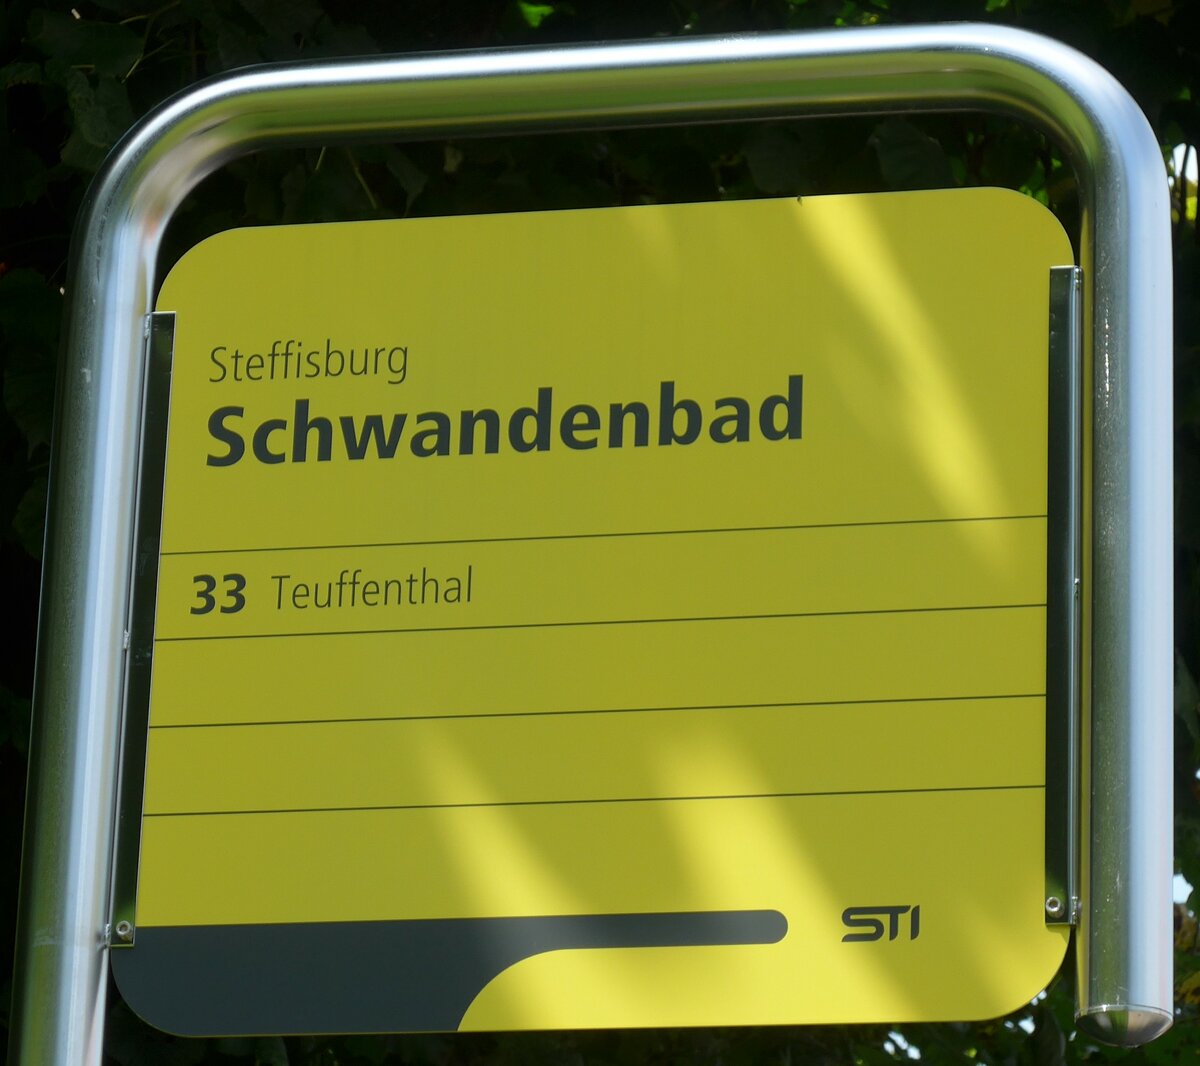 (153'725) - STI-Haltestellenschild - Steffisburg, Schwandenbad - am 10. August 2014